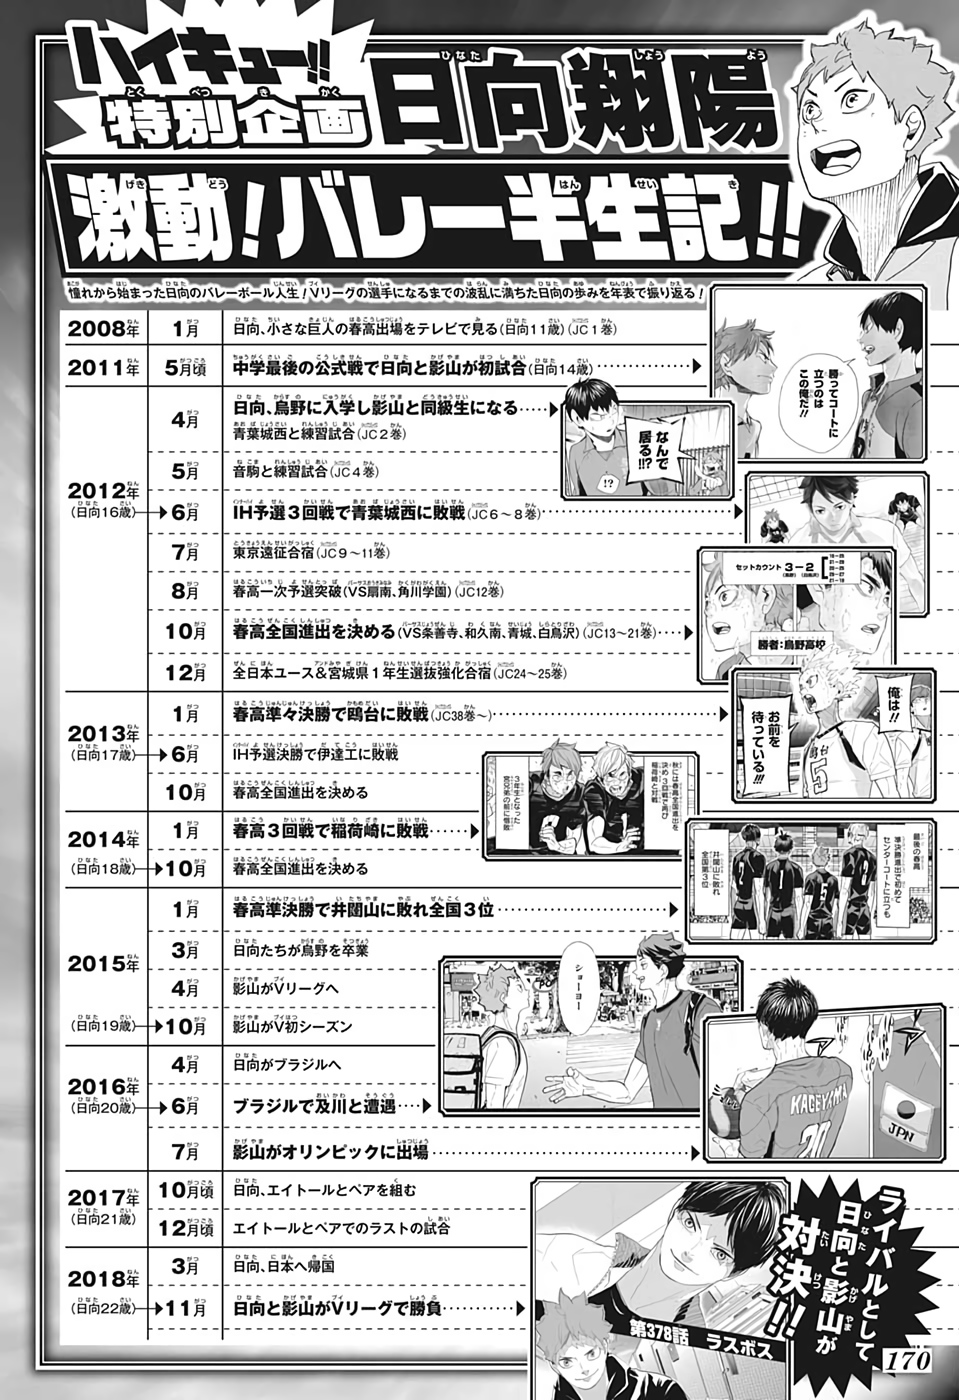 Carte tomy HAIKYU anime manga SHIRATORIZAWA card HV-11-031 made in japon